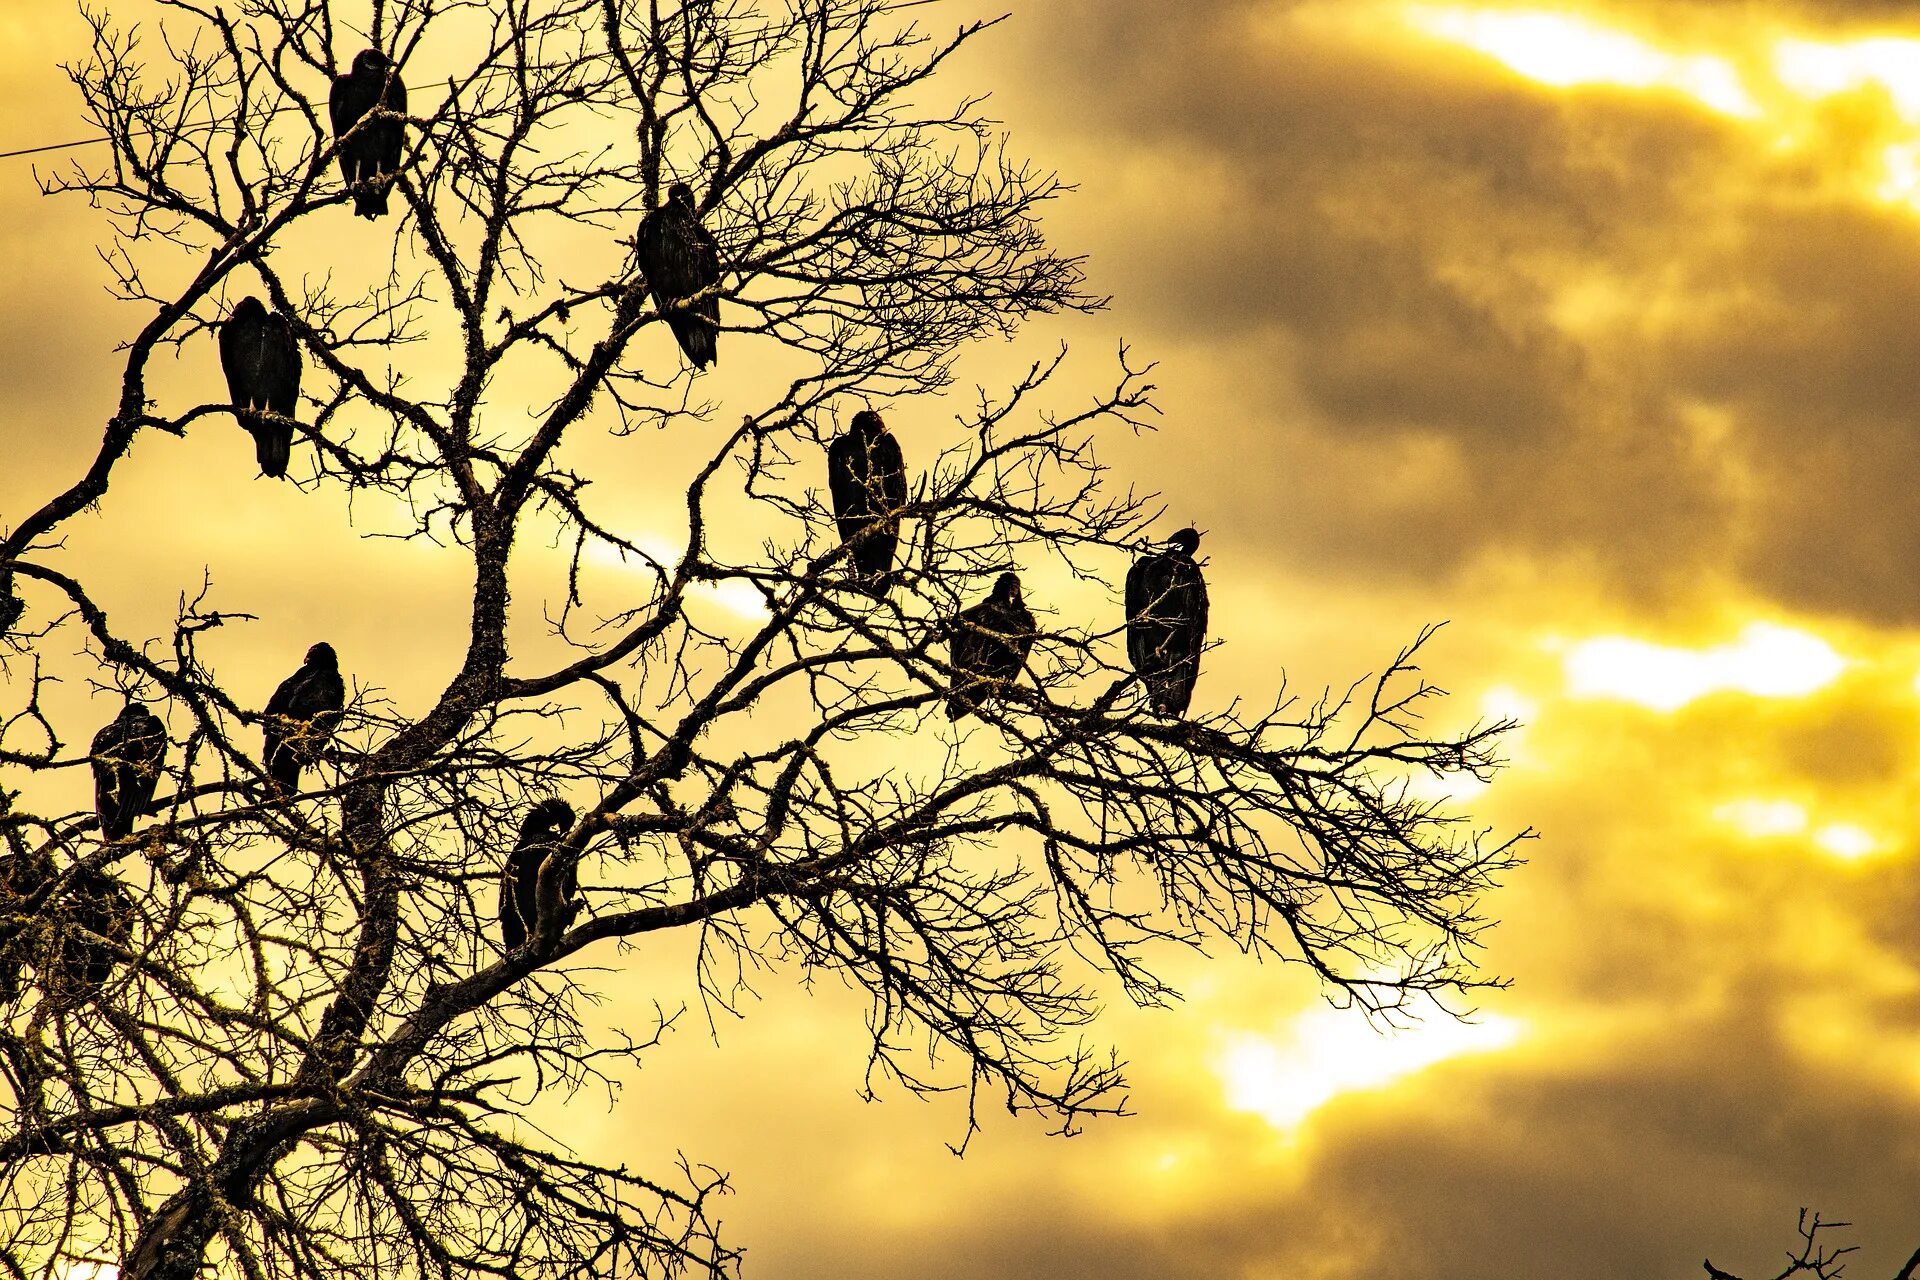 Птицы дерево начинающему. Птицы на дереве. Деревце с птичками на ветках. Птичье дерево. Изображение птиц и деревьев.